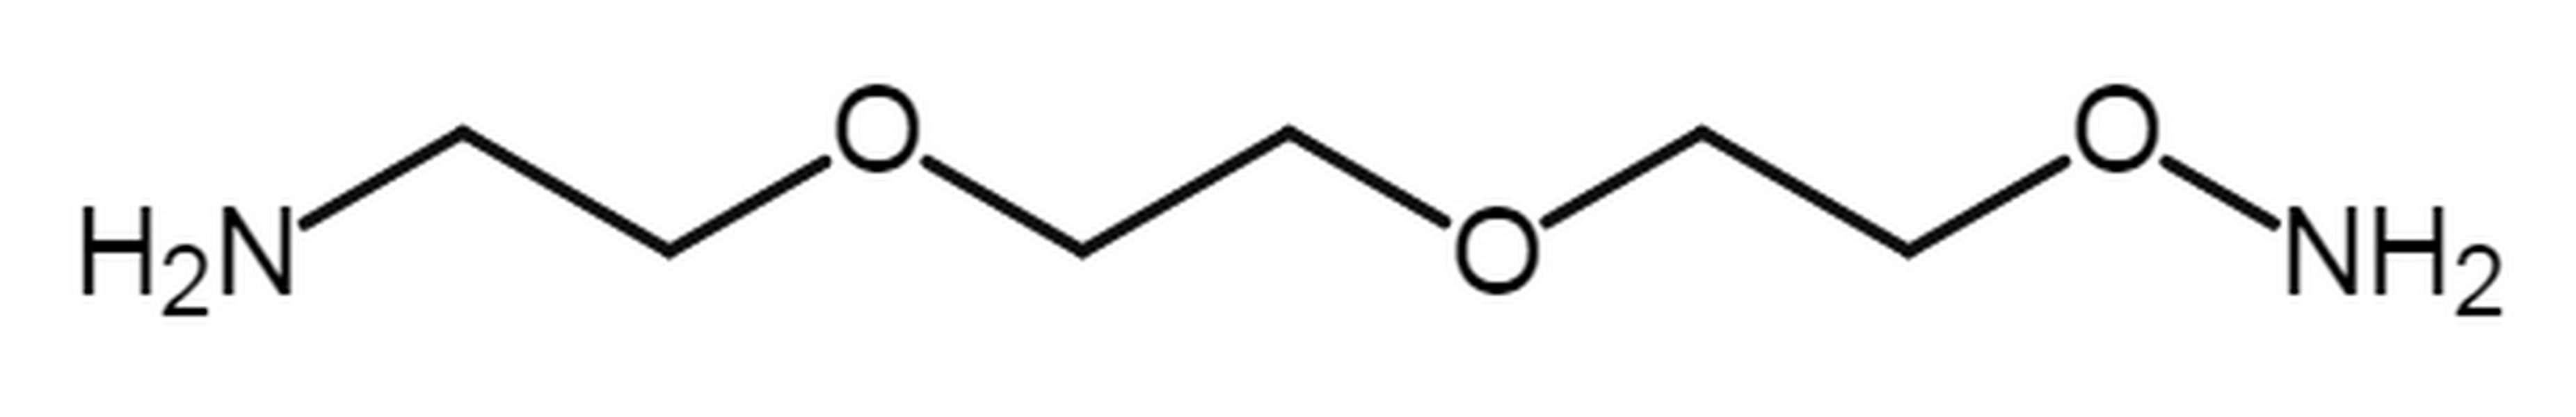 Aminooxy-PEG2-amine HCl salt